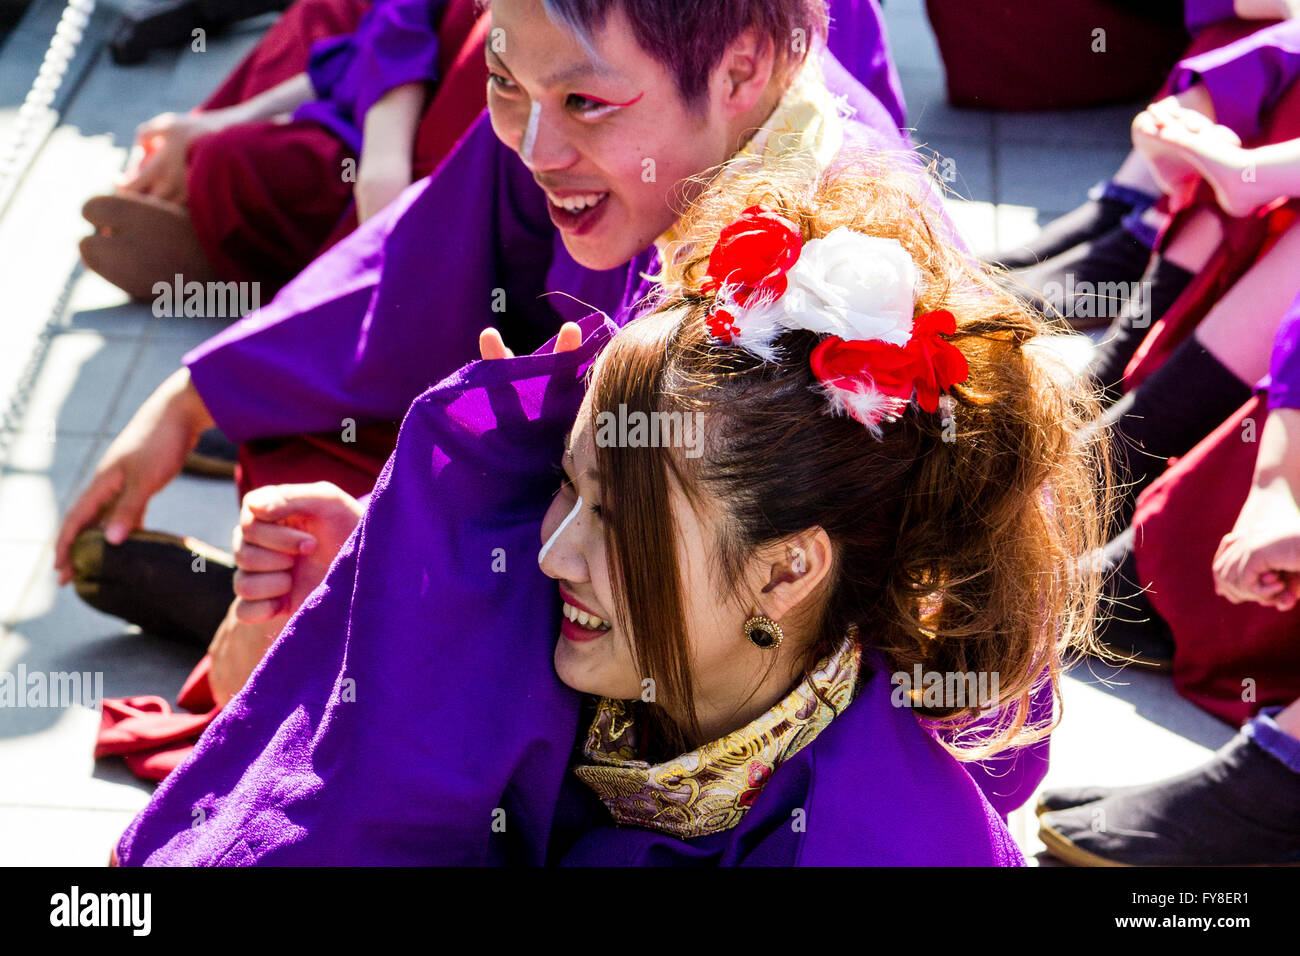 Auf der Suche nach junger Mann sitzt neben junge Frau einen Witz zusammen teilen. In purpur Yukata während Yosakoi Dance Festival gekleidet. Stockfoto